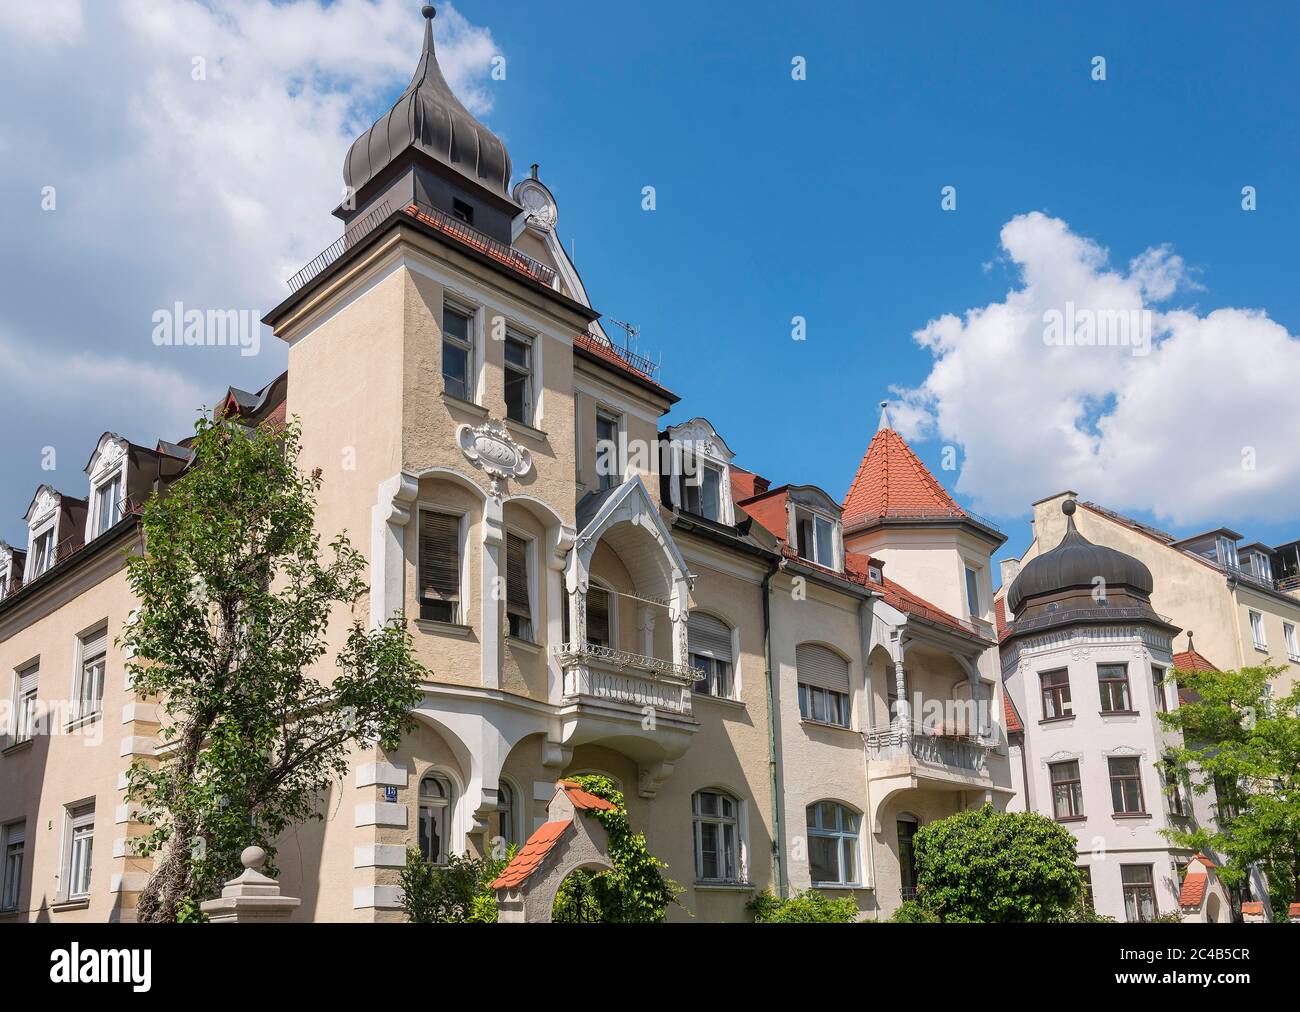 Edifici rinascimentali tedeschi con torre ad angolo e balconi in legno, Botmerstrasse, Neuhausen, Monaco, alta Baviera, Baviera, Germania Foto Stock